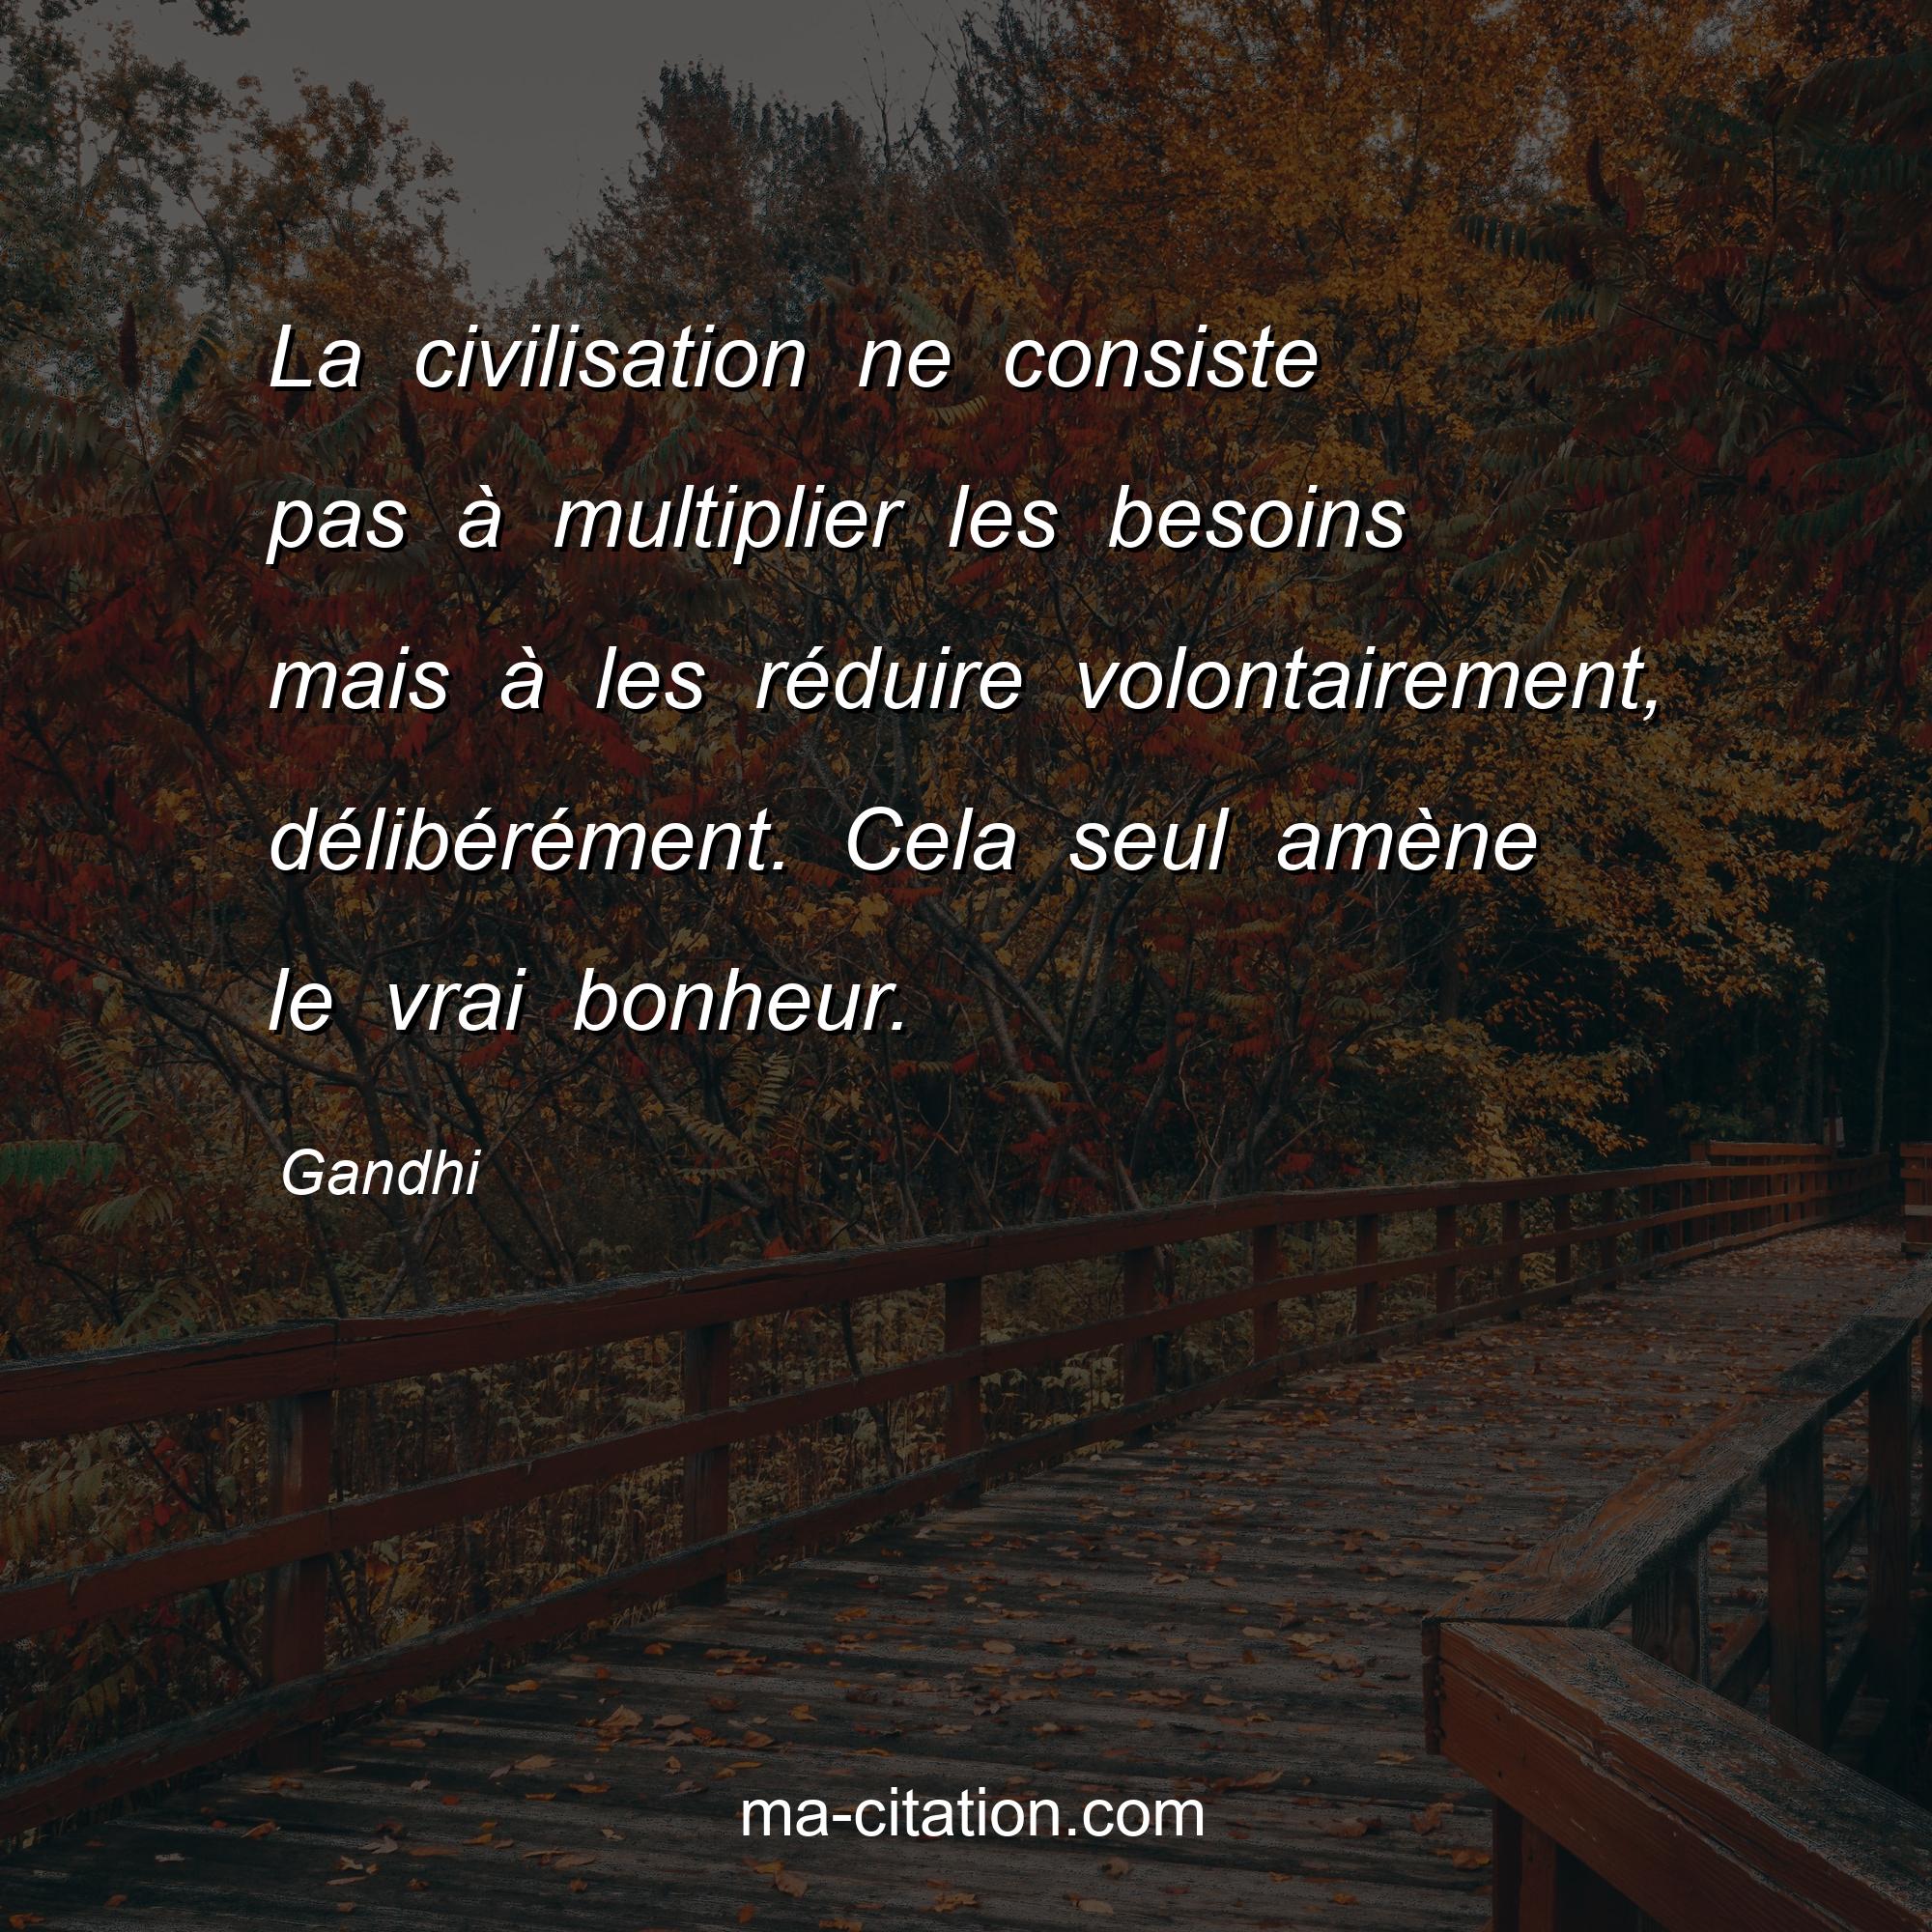 Gandhi : La civilisation ne consiste pas à multiplier les besoins mais à les réduire volontairement, délibérément. Cela seul amène le vrai bonheur.